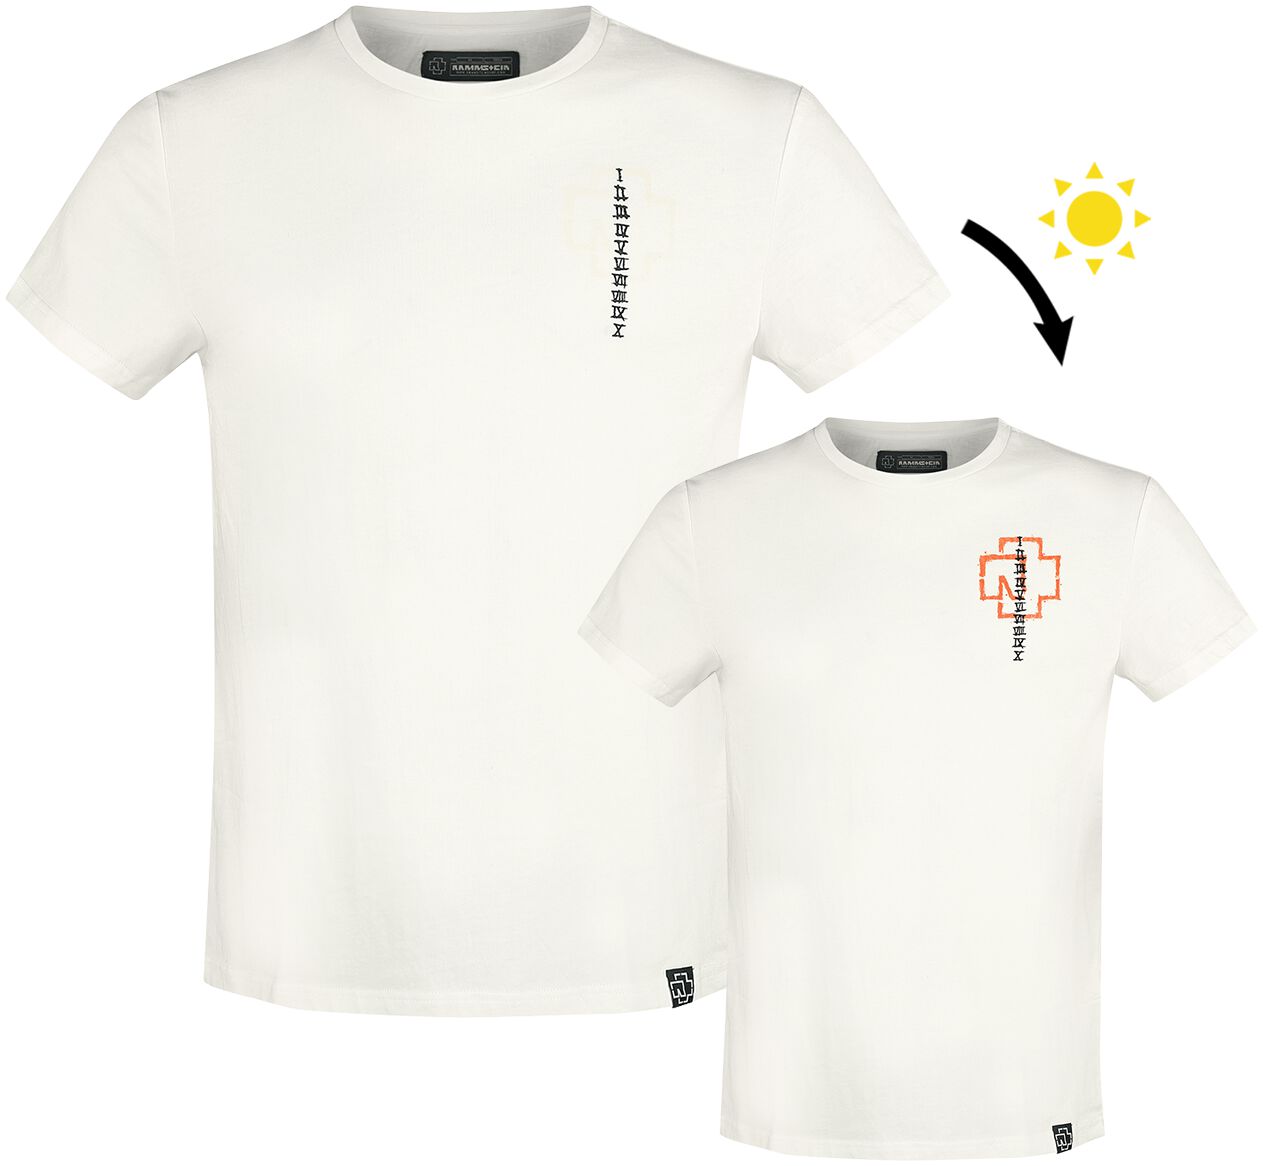 Rammstein Sonne T-Shirt weiß in XL